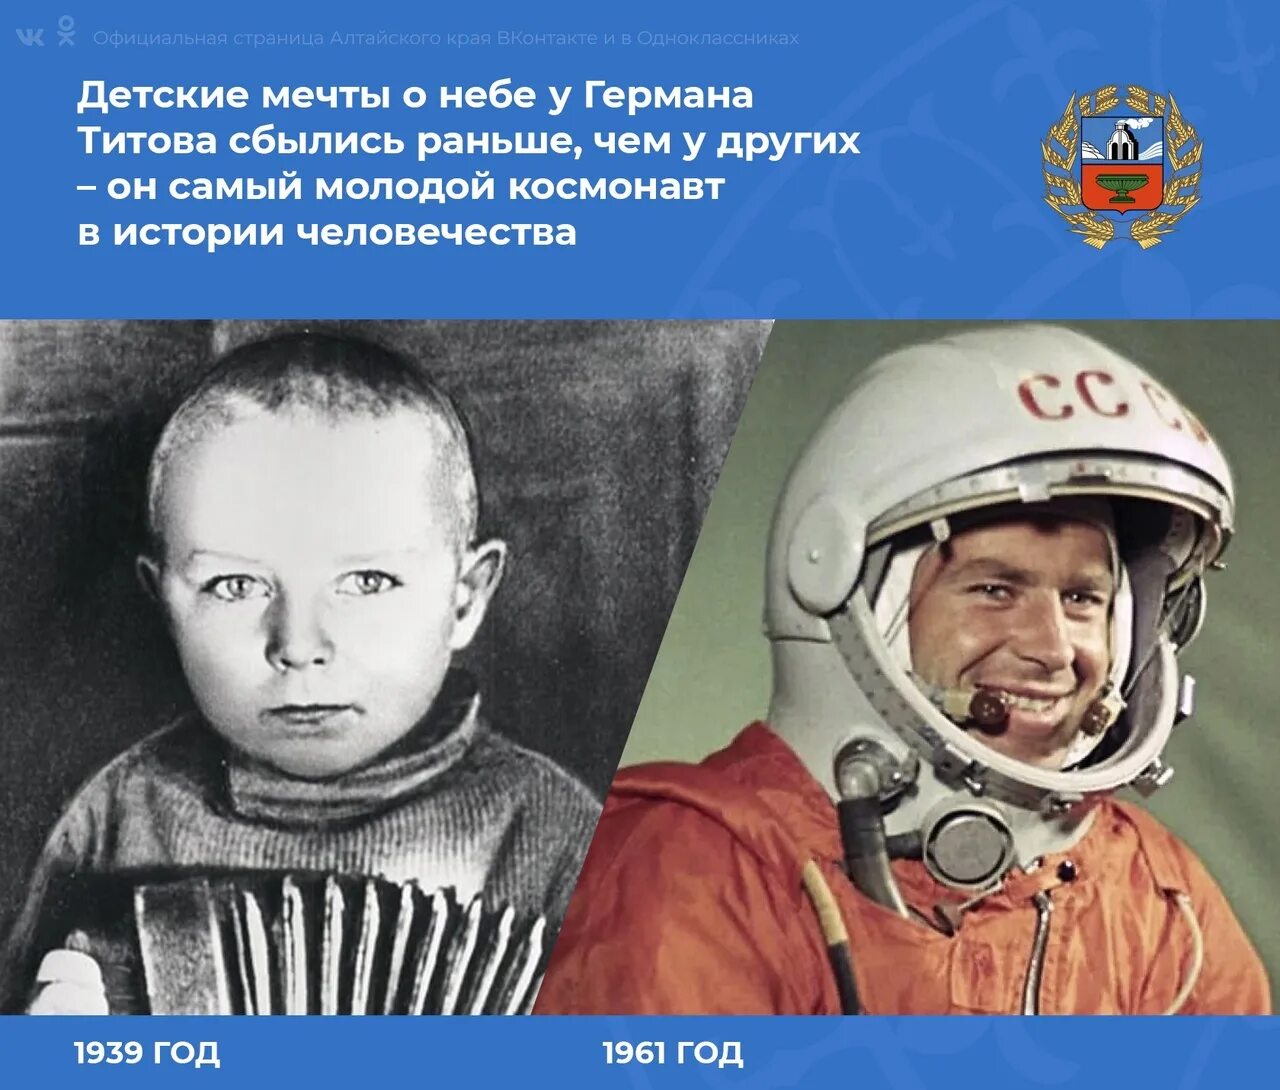 Первый советский космонавт полетевший в космос. Полет в космос Германа Титова 1961 г.